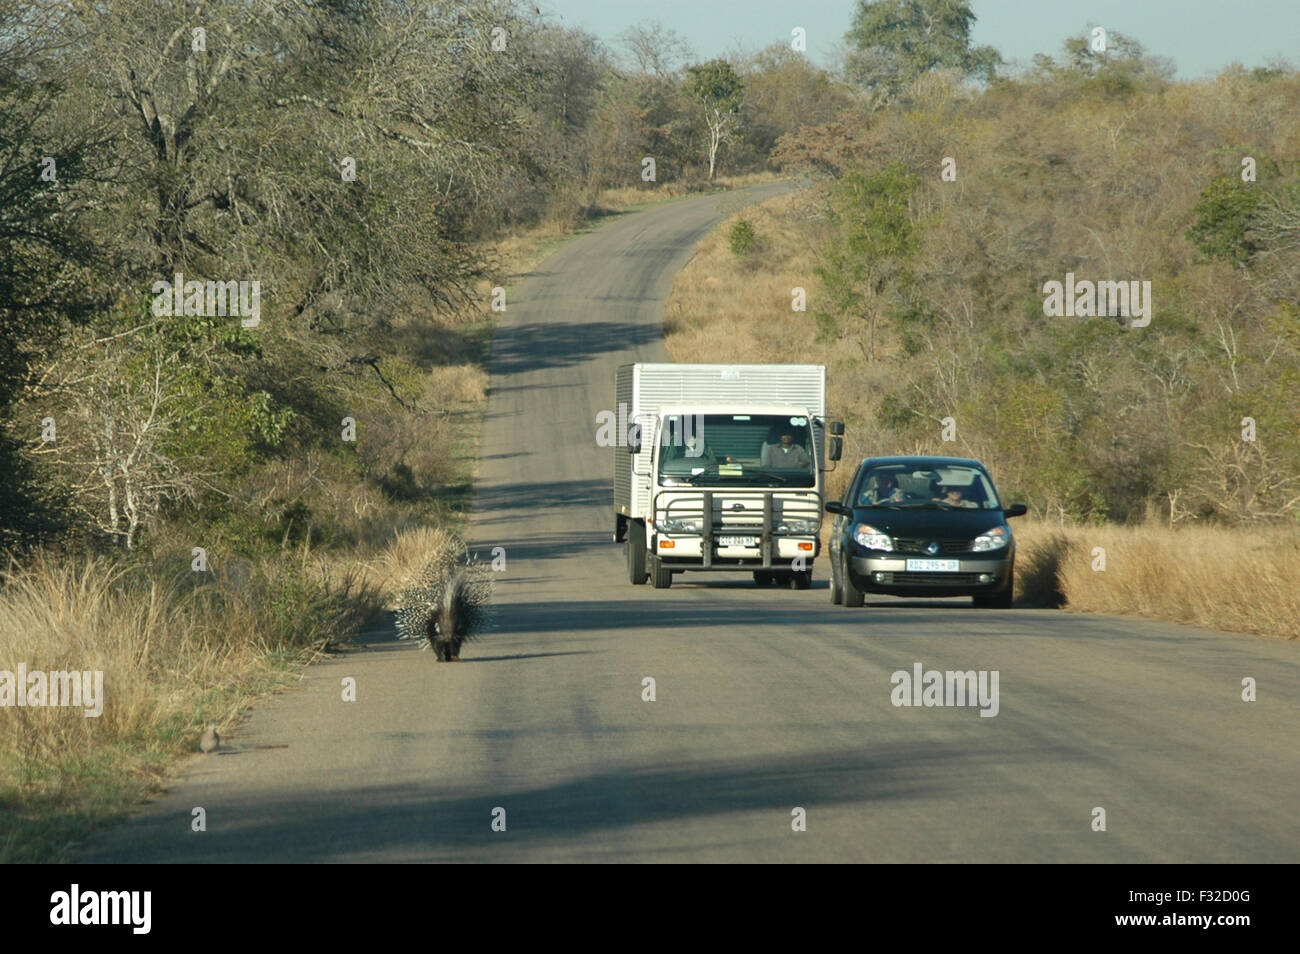 Cap Porcupine (Hystrix africaeaustralis) adulte, la marche sur route près de la voiture et camion, Kruger N.P., Great Limpopo Transfrontier Park, Mpumalanga, Afrique du Sud, juillet Banque D'Images